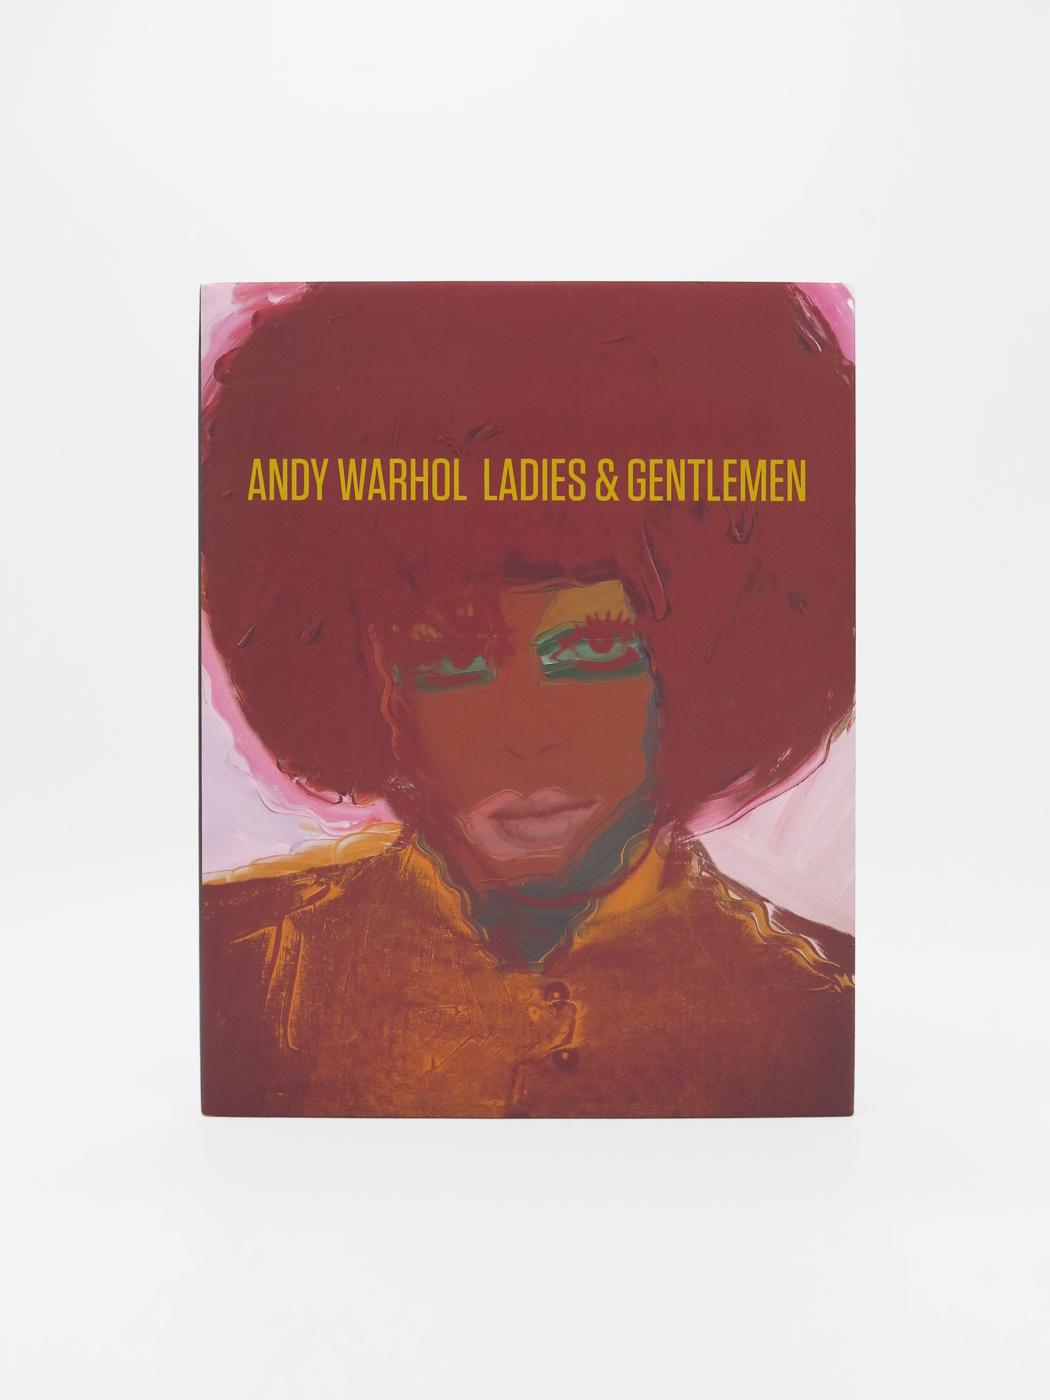 Andy Warhol, Ladies & Gentlemen